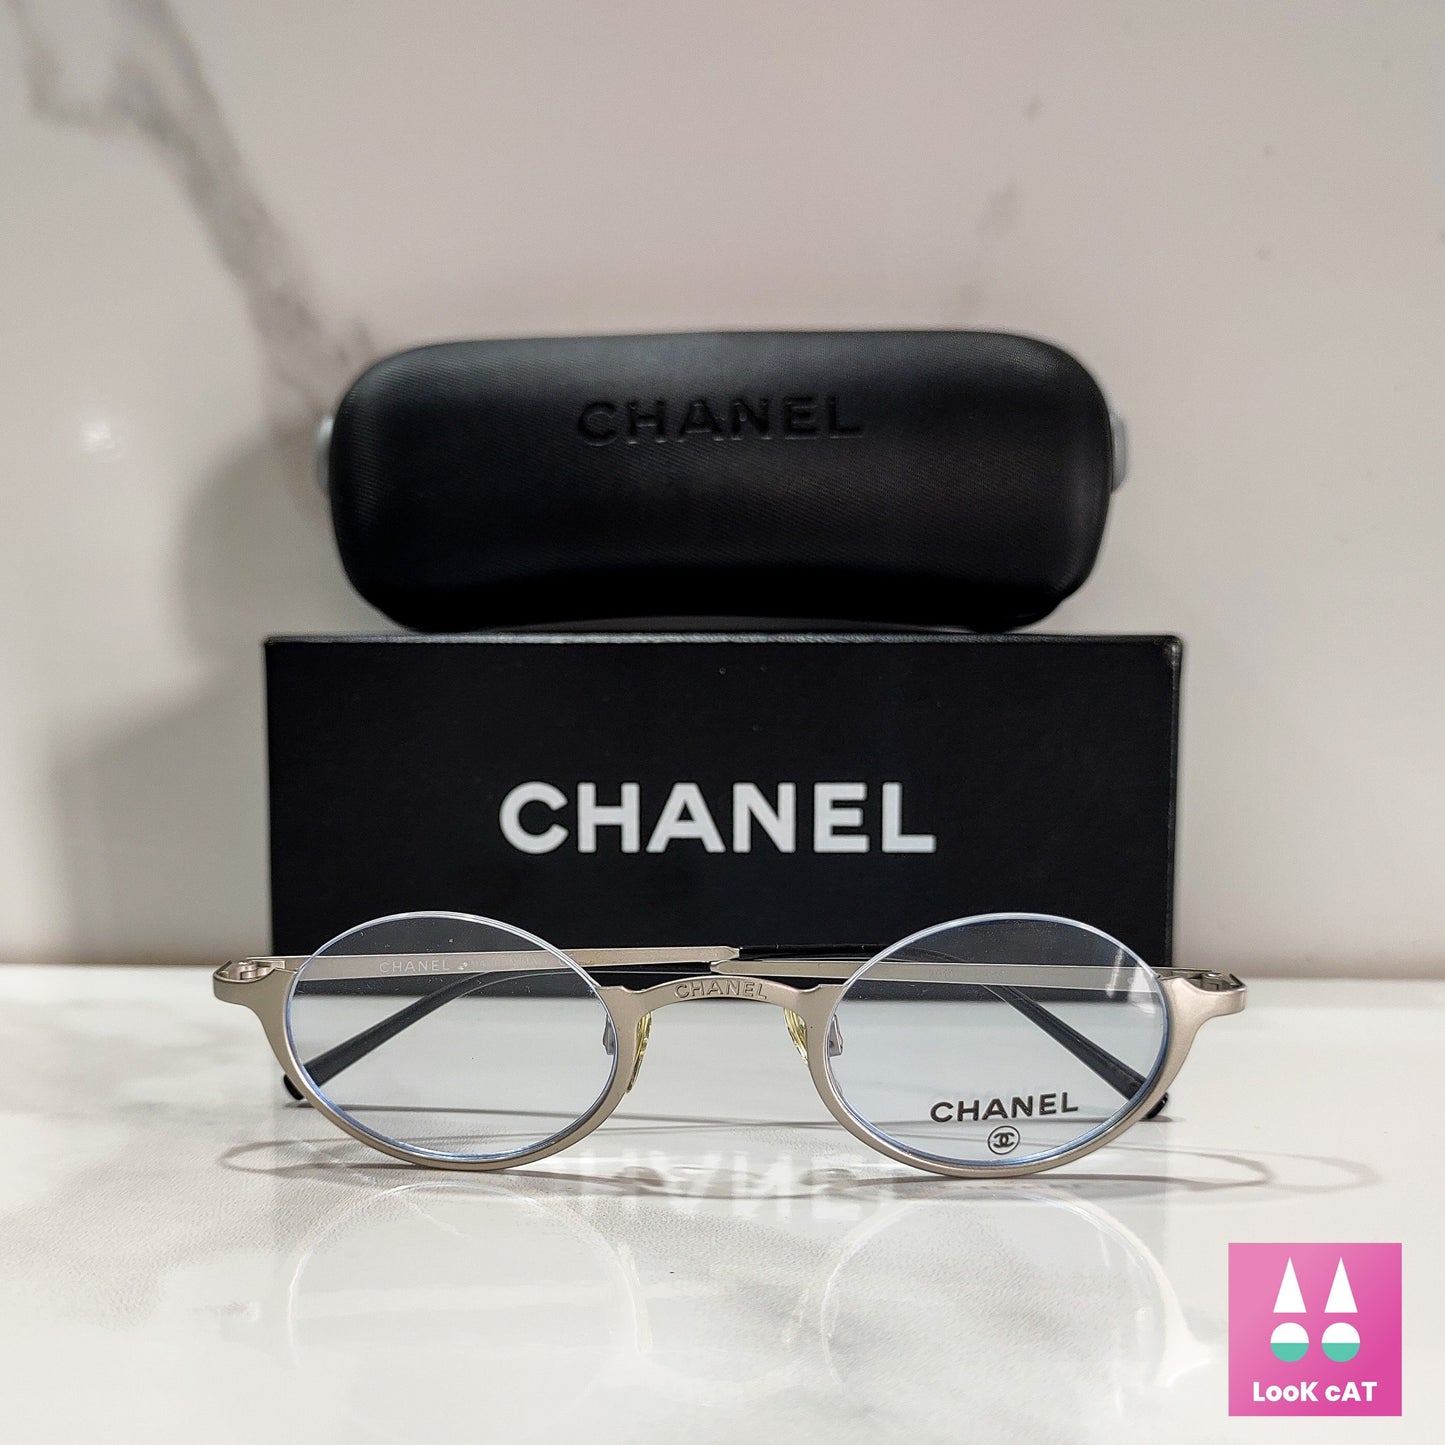 Chanel 2010 eyeglasses frame brille lunette y2k rimless shades